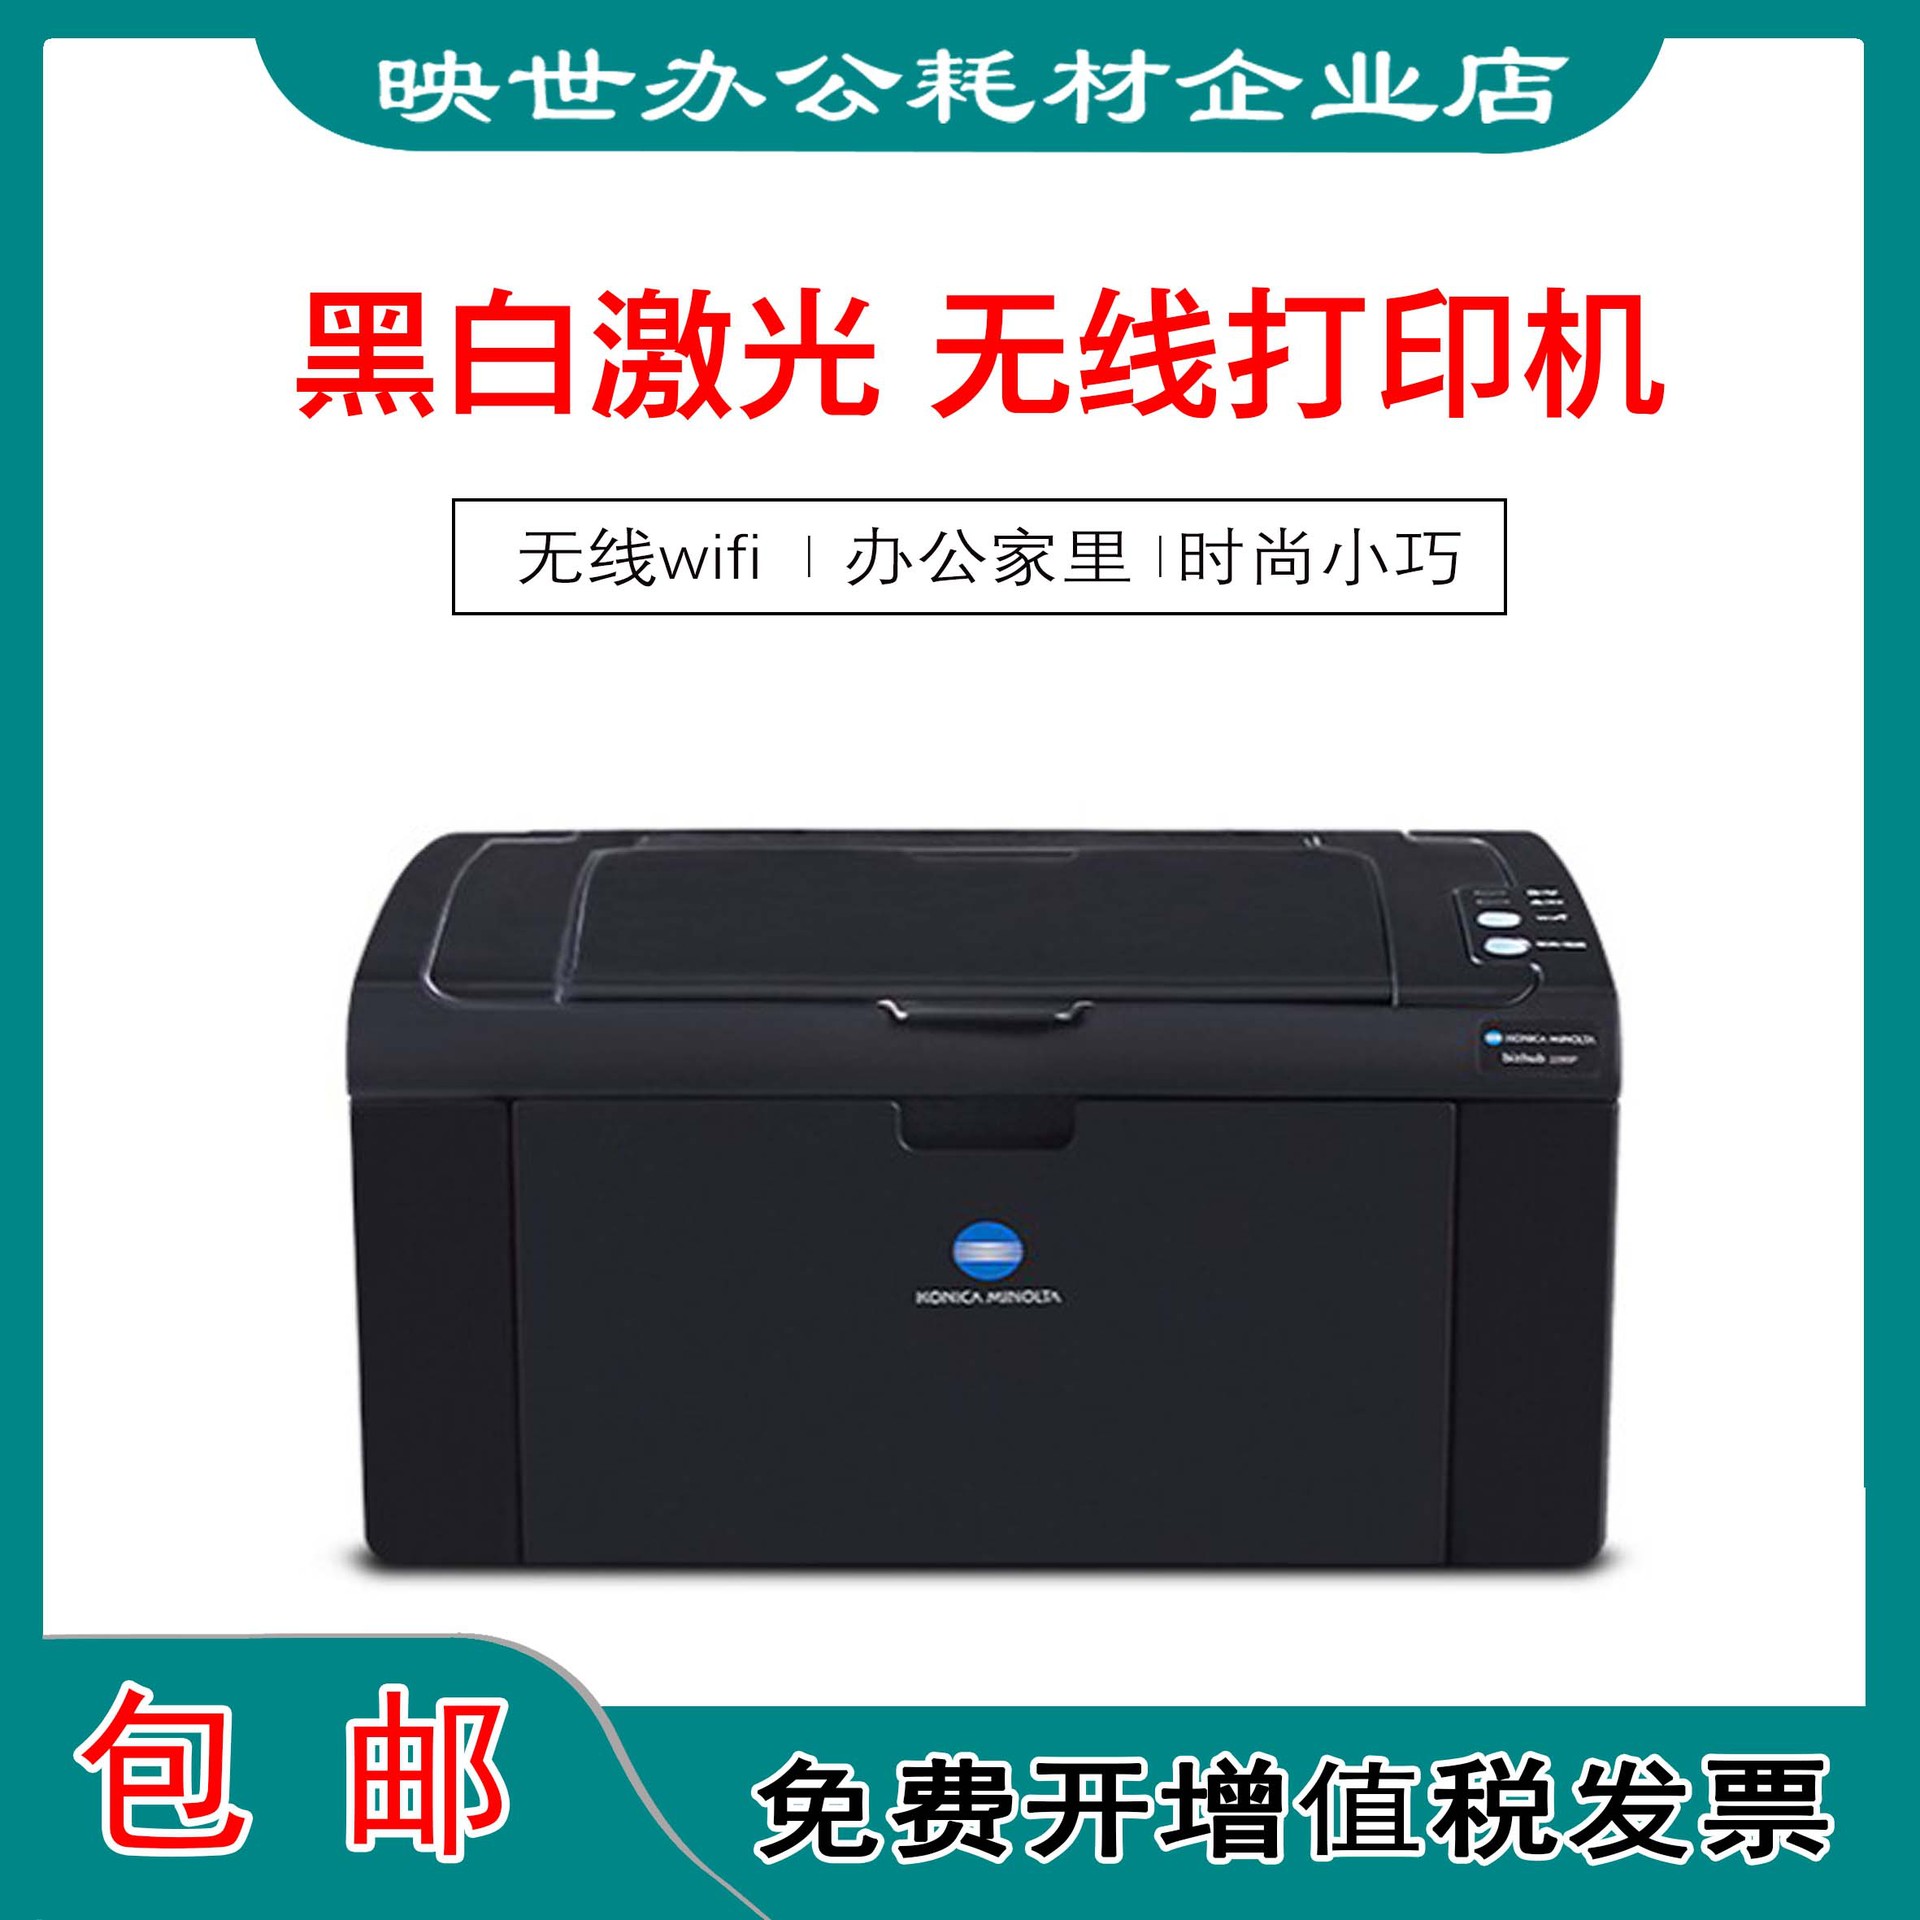 Konica Minolta 2200P/2280MP laser A4 black and white WIFI Konica Minolta printer household small-scale Hand